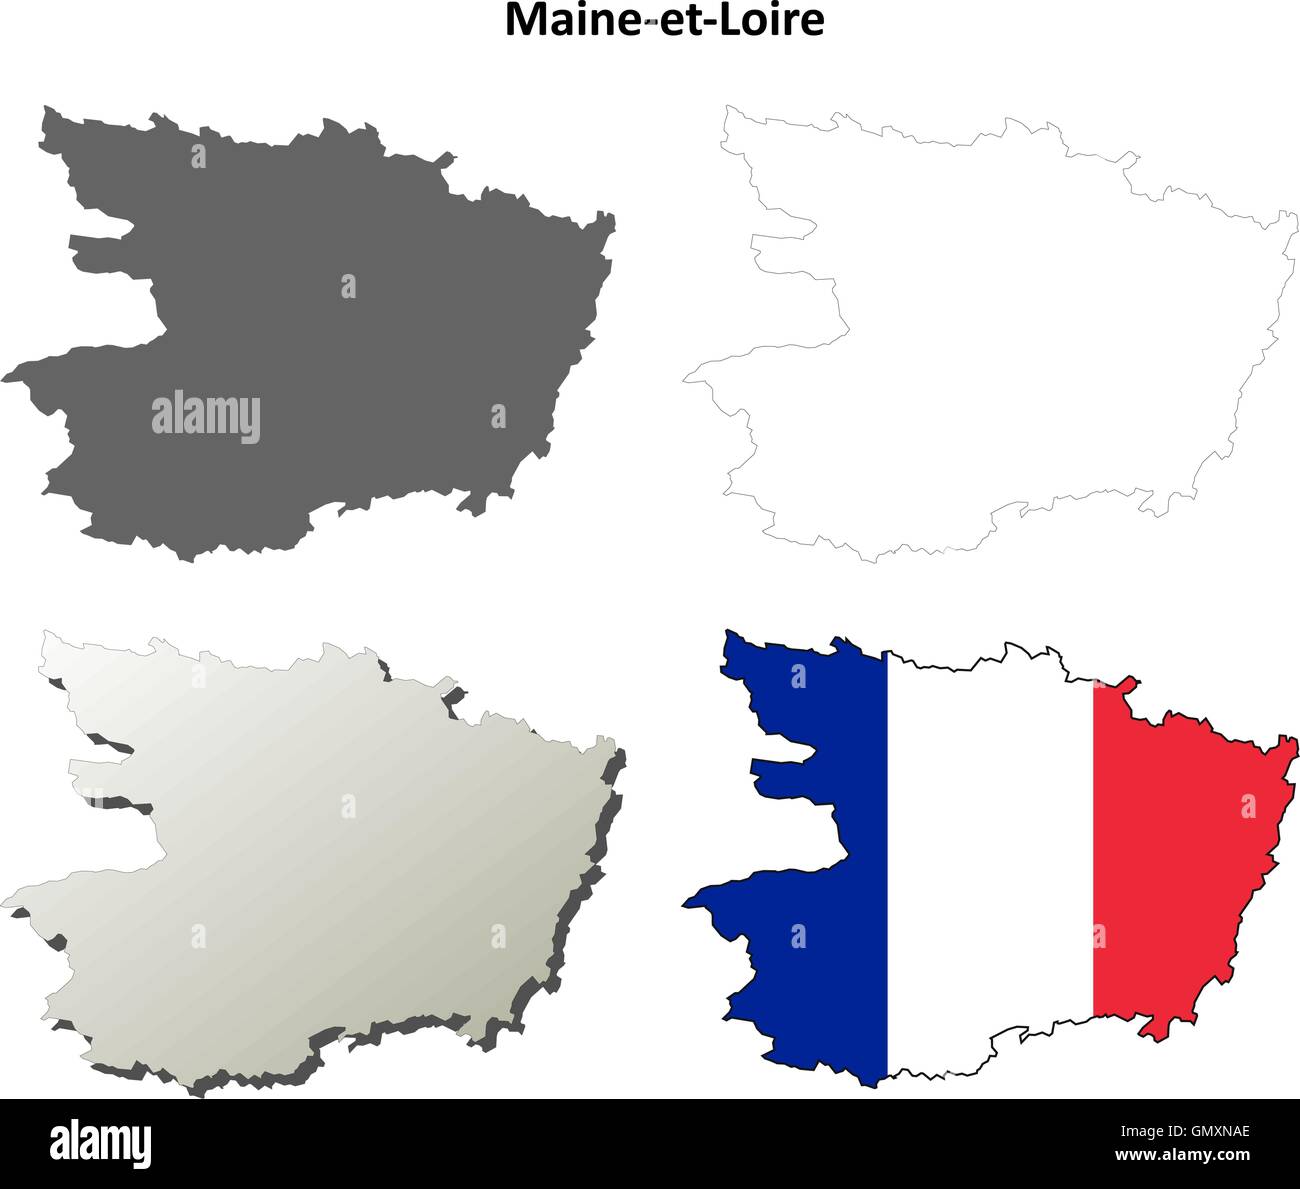 Maine-et-Loire, Pays de la Loire aperçu de l'ensemble de cartes Illustration de Vecteur